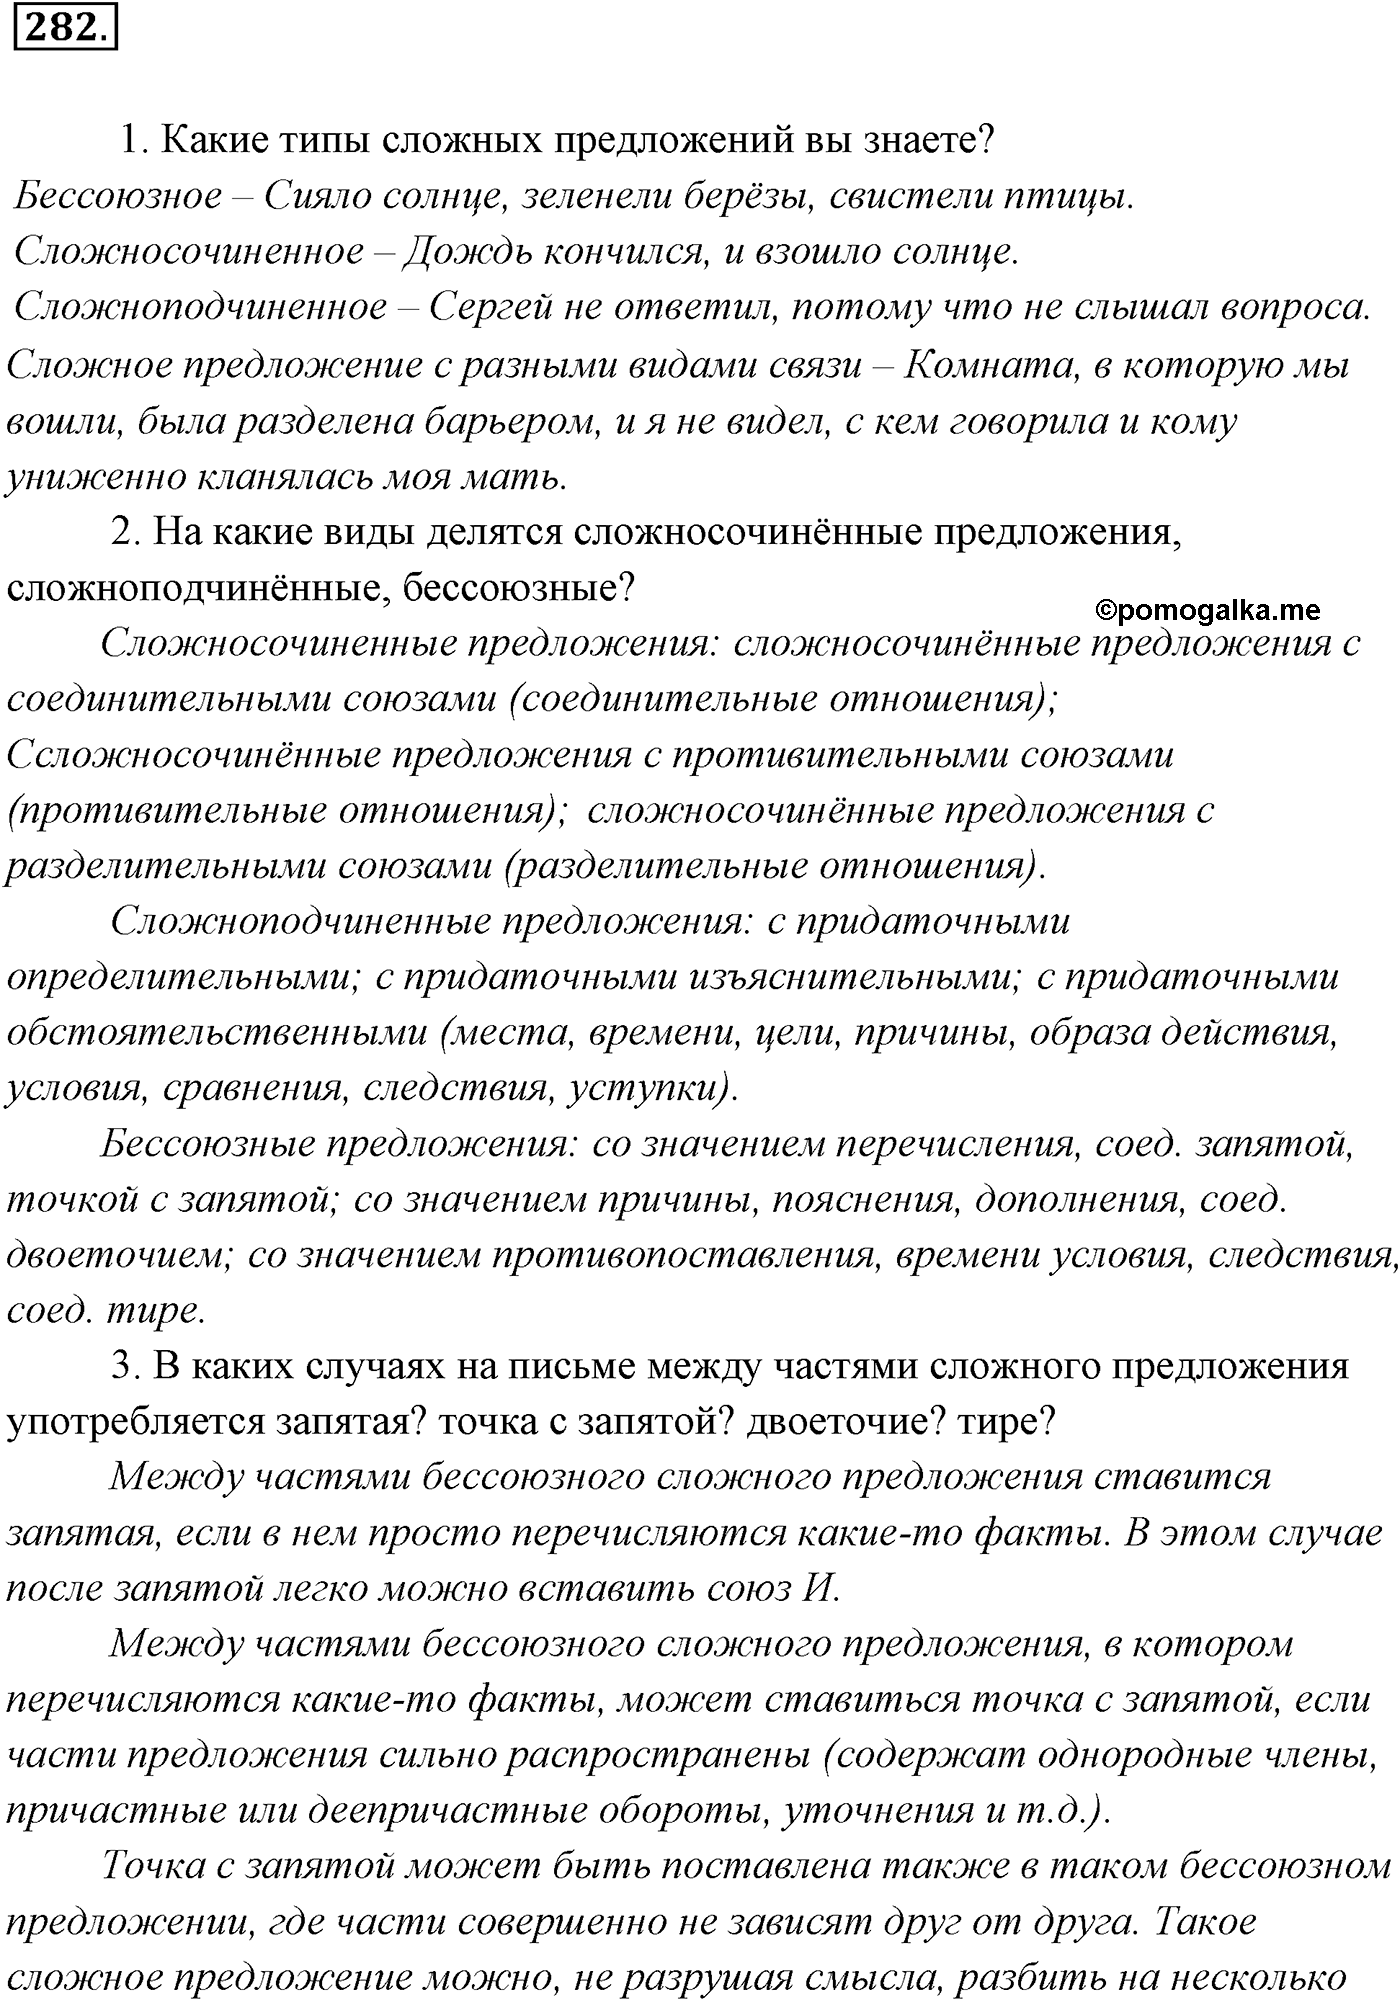 страница 206 номер 282 русский язык 9 класс Разумовская 2011 год